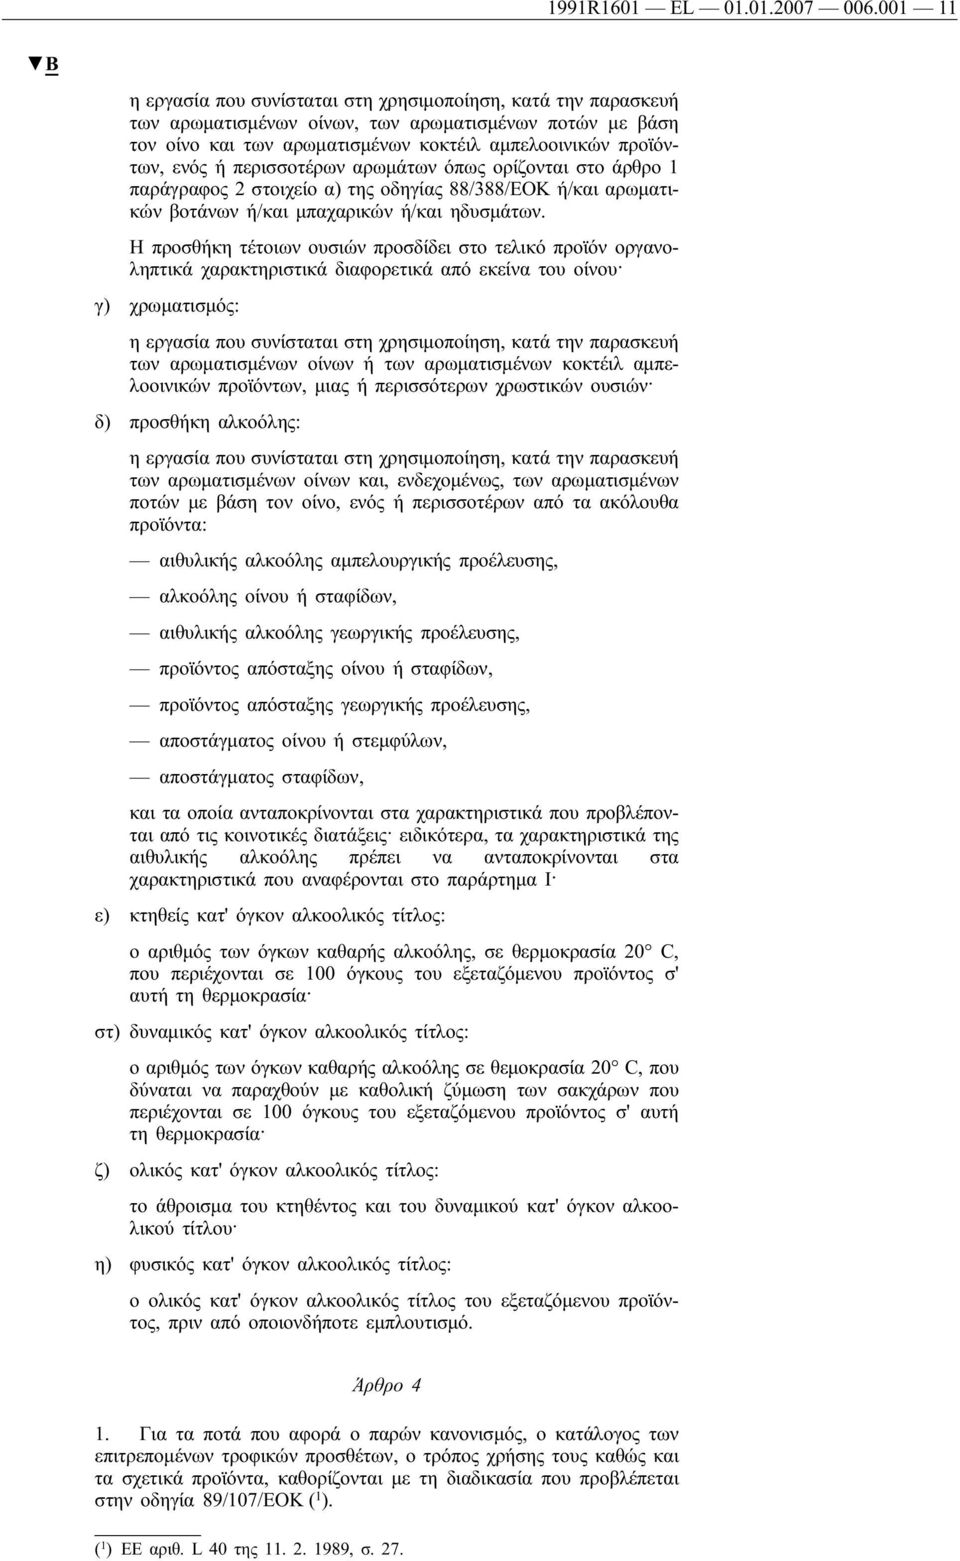 περισσοτέρων αρωμάτων όπως ορίζονται στο άρθρο 1 παράγραφος 2 στοιχείο α) της οδηγίας 88/388/ΕΟΚ ή/και αρωματικών βοτάνων ή/και μπαχαρικών ή/και ηδυσμάτων.